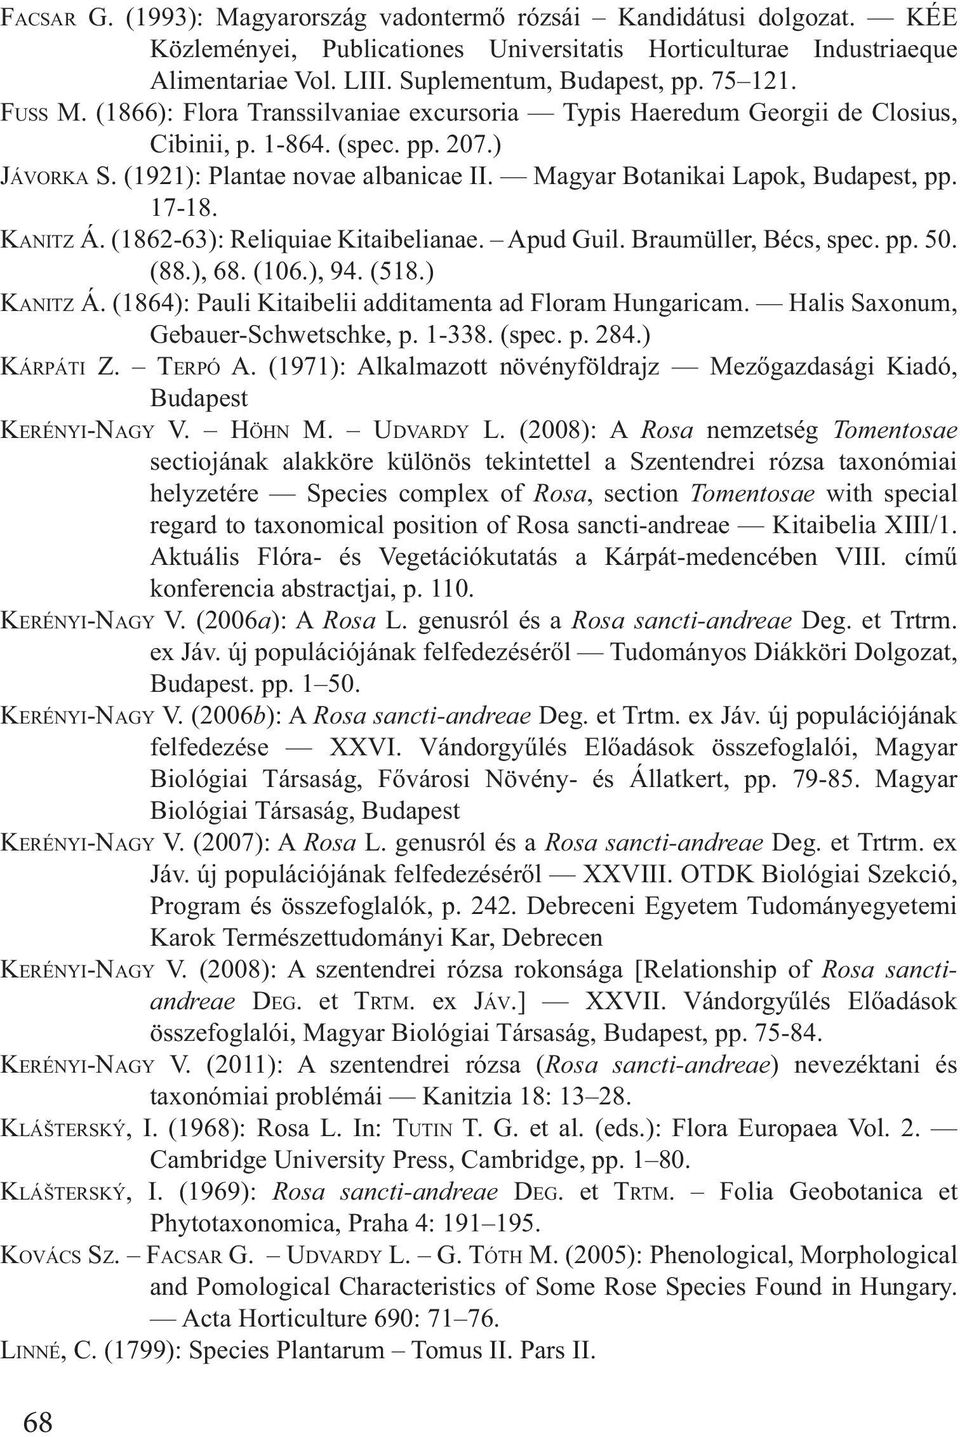 (2008): A Rosa nemzetség Tomentosae sectiojának alakköre különös tekintettel a Szentendrei rózsa taxonómiai helyzetére Species complex of Rosa, section Tomentosae with special regard to taxonomical